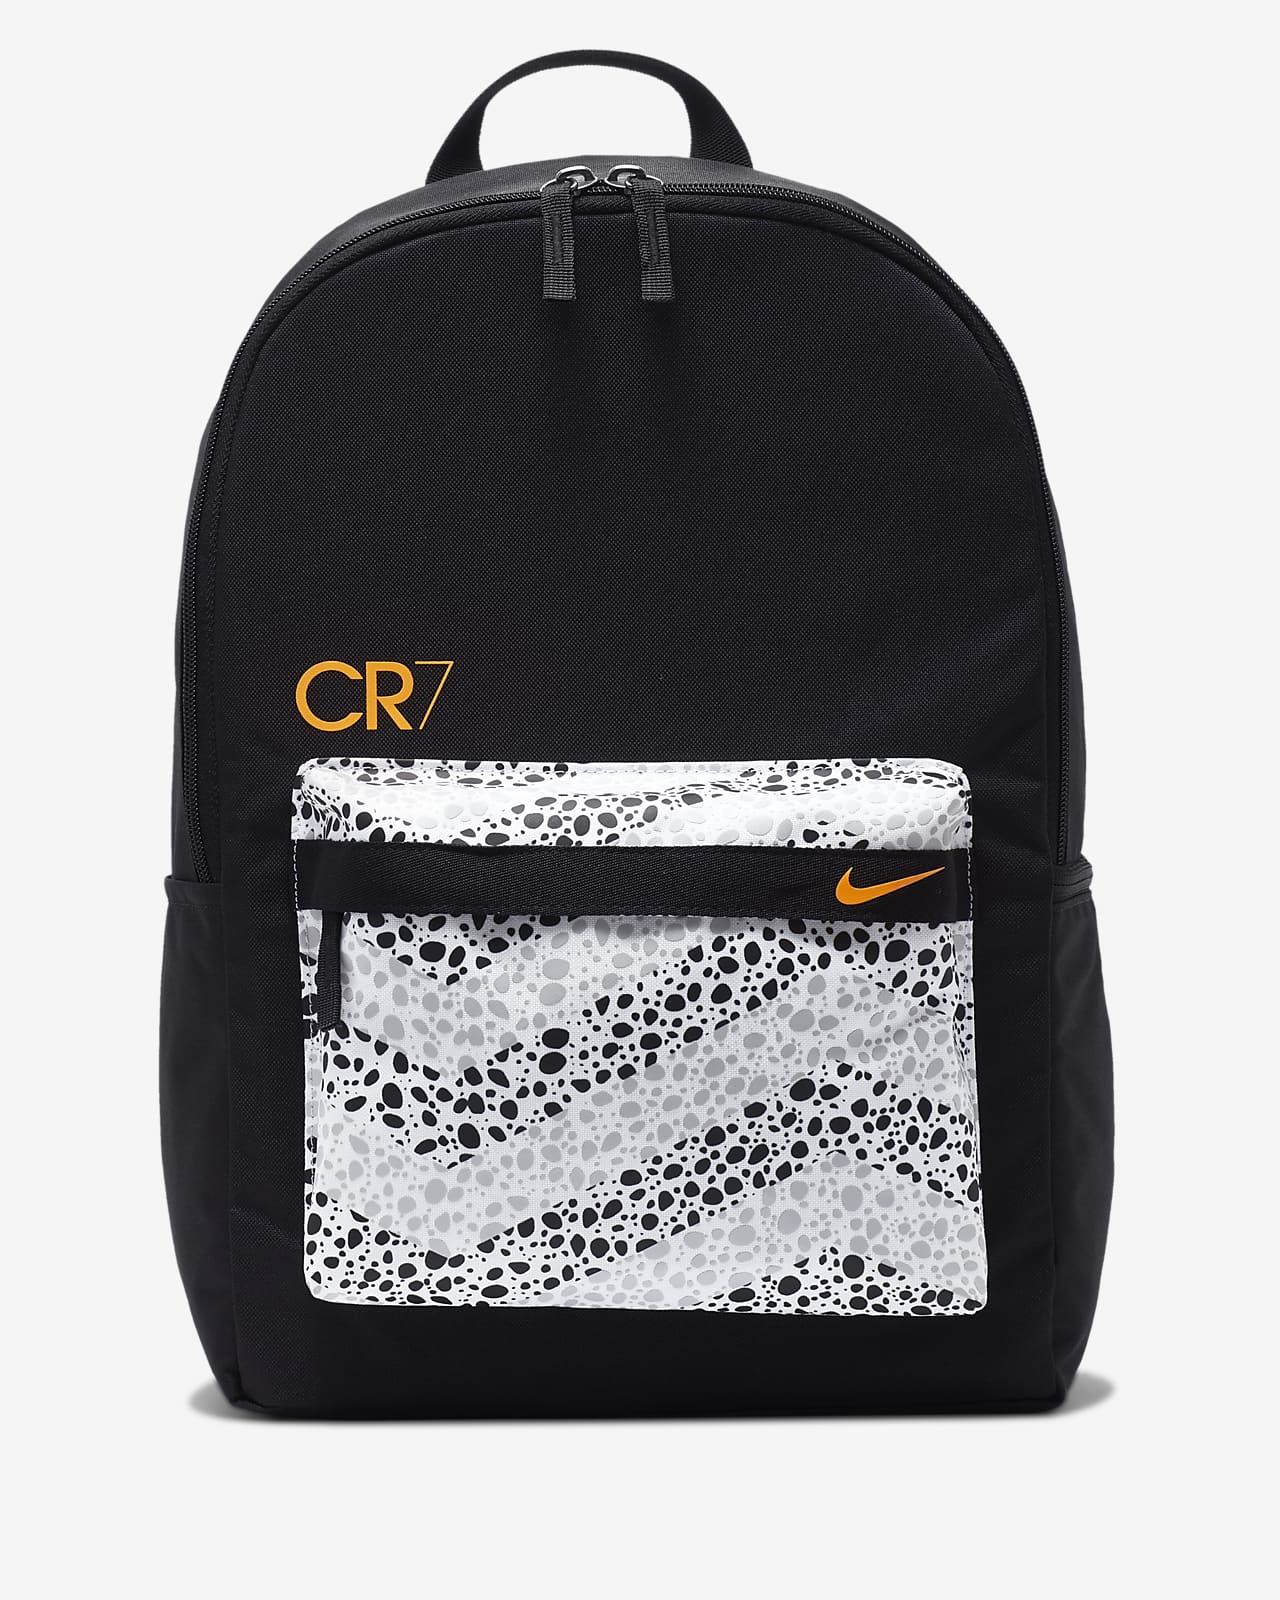 nike cr7 backpack